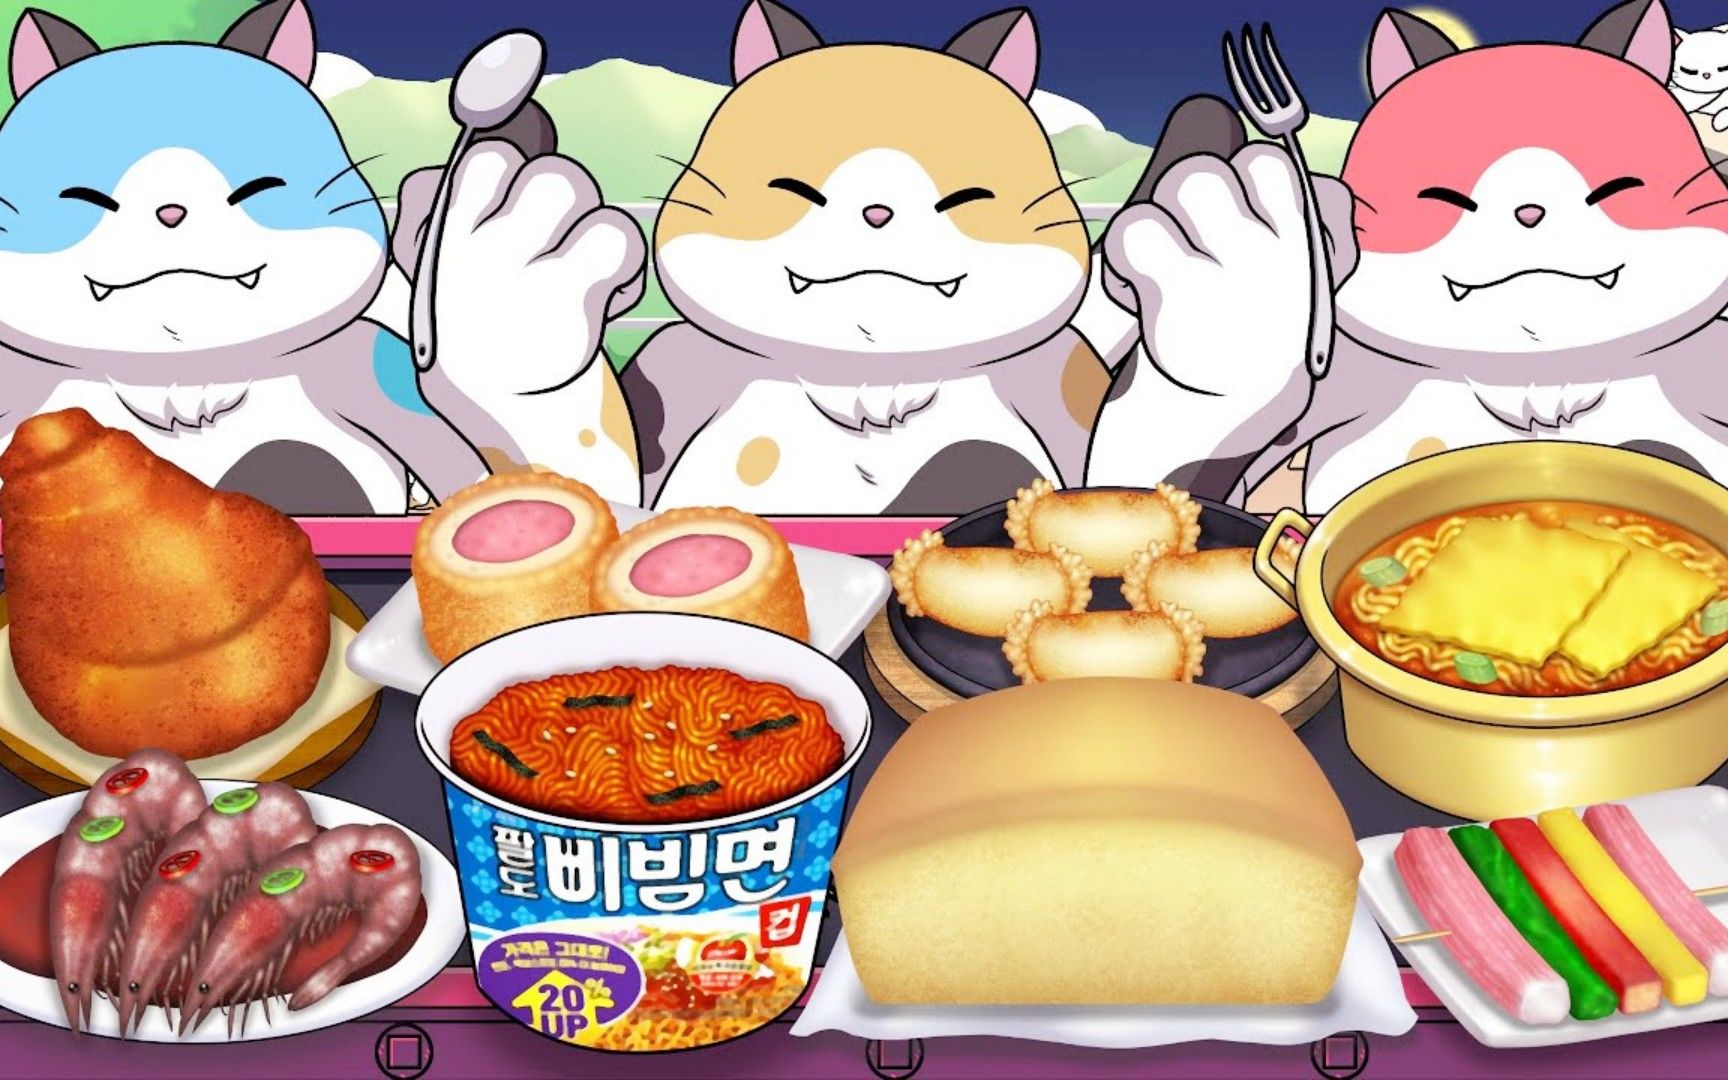 美食动画:料理猫王三兄弟开启美食之旅,丰富多样的食品好好吃!